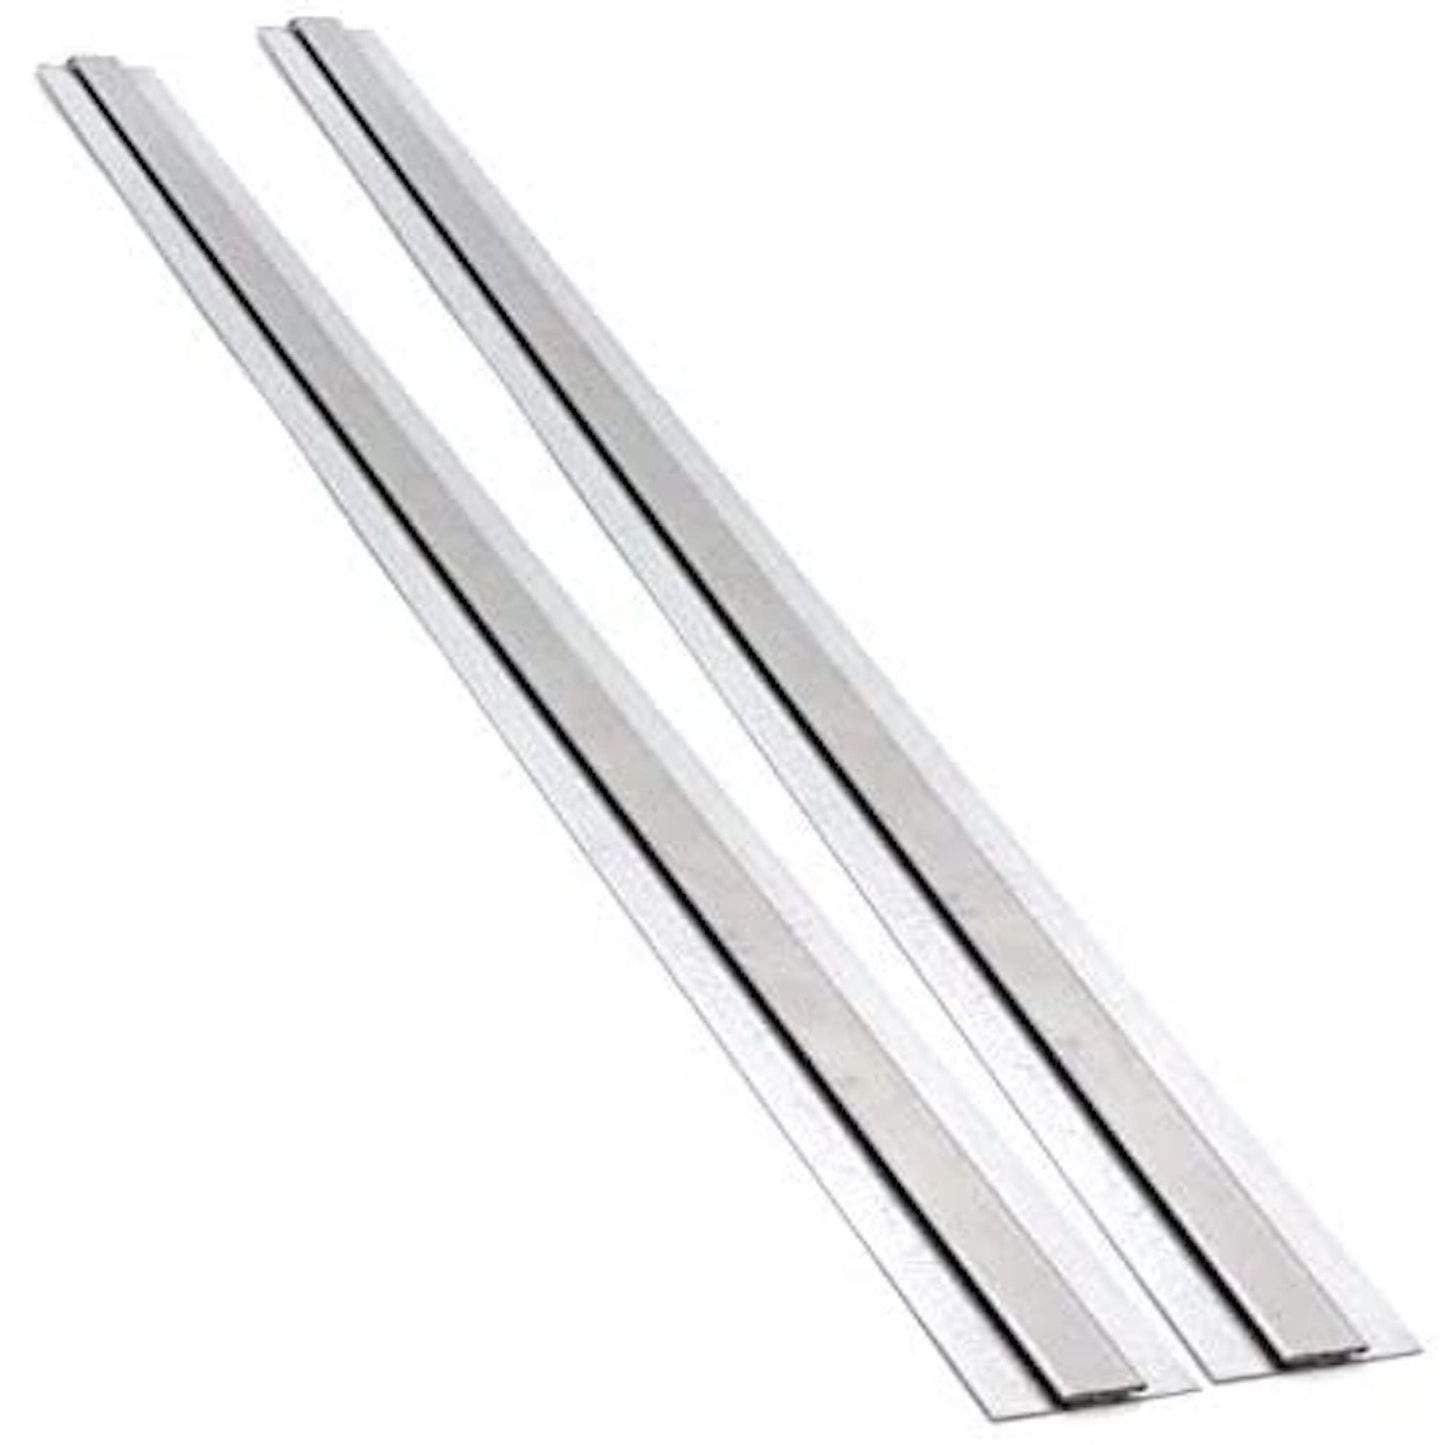 Stainless Steel Divider Bar 10FT